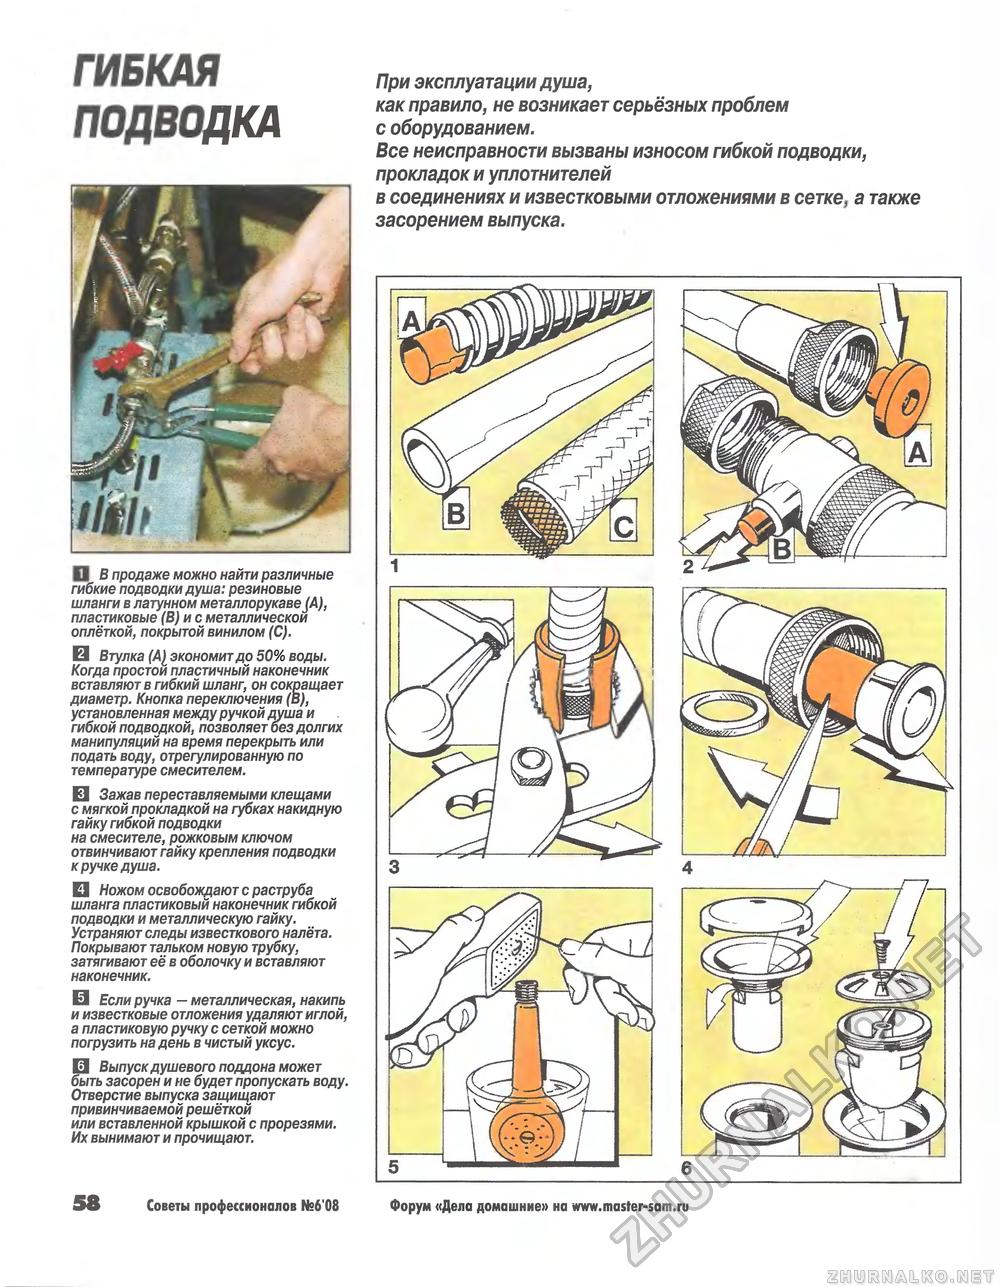 Советы профессионалов 2008-06, страница 58